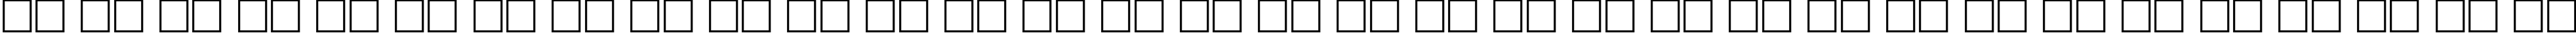 Пример написания русского алфавита шрифтом Taurus